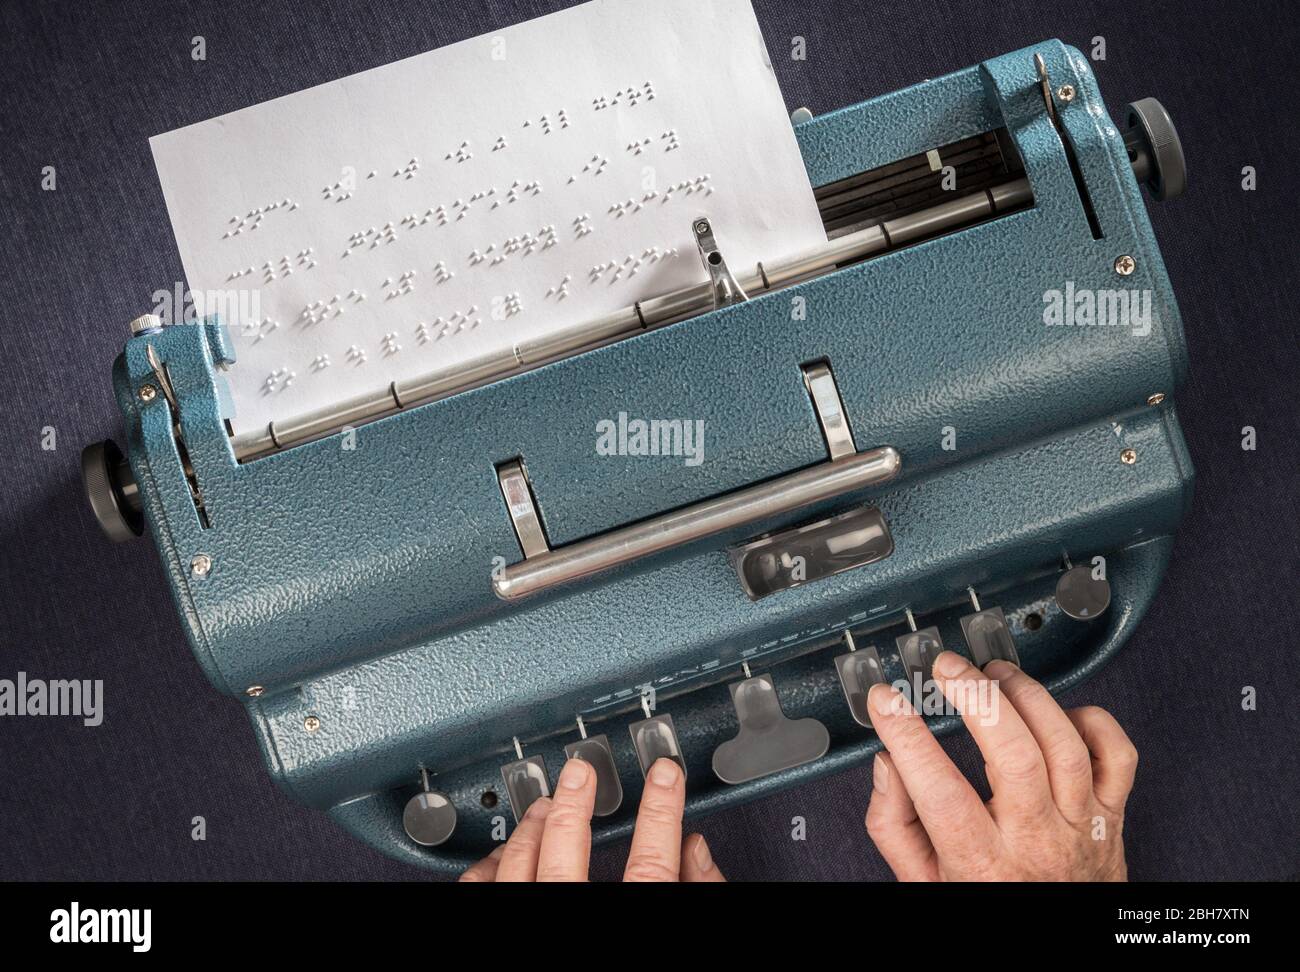 Une femme qui tape en braille à l'aide d'une machine à écrire Perkins Brailler. Banque D'Images